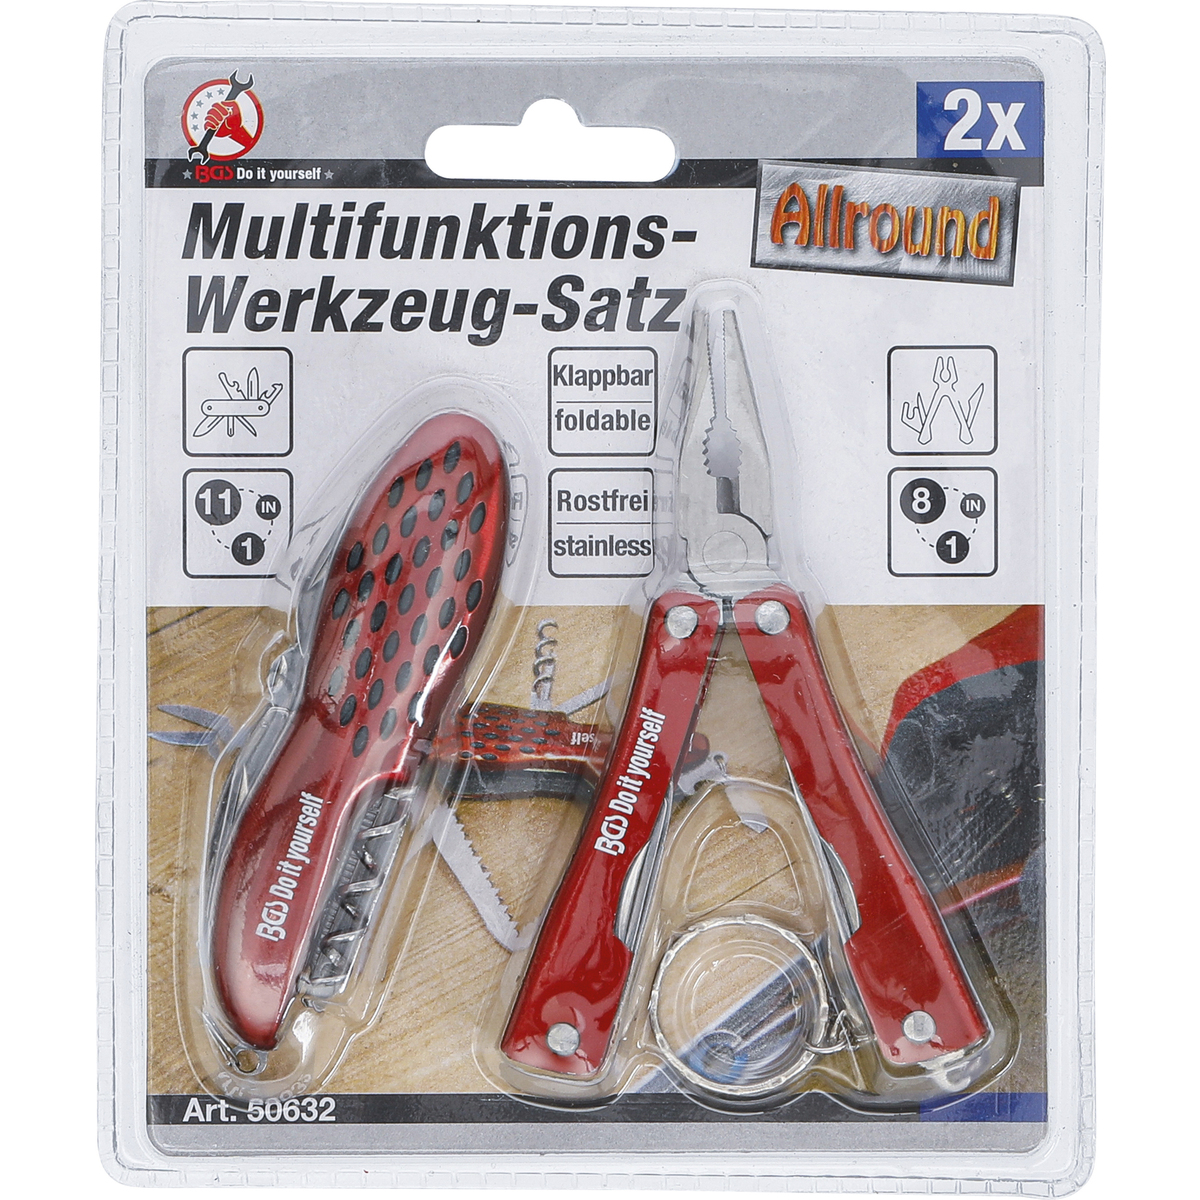 Multifunktions-Werkzeug-Satz